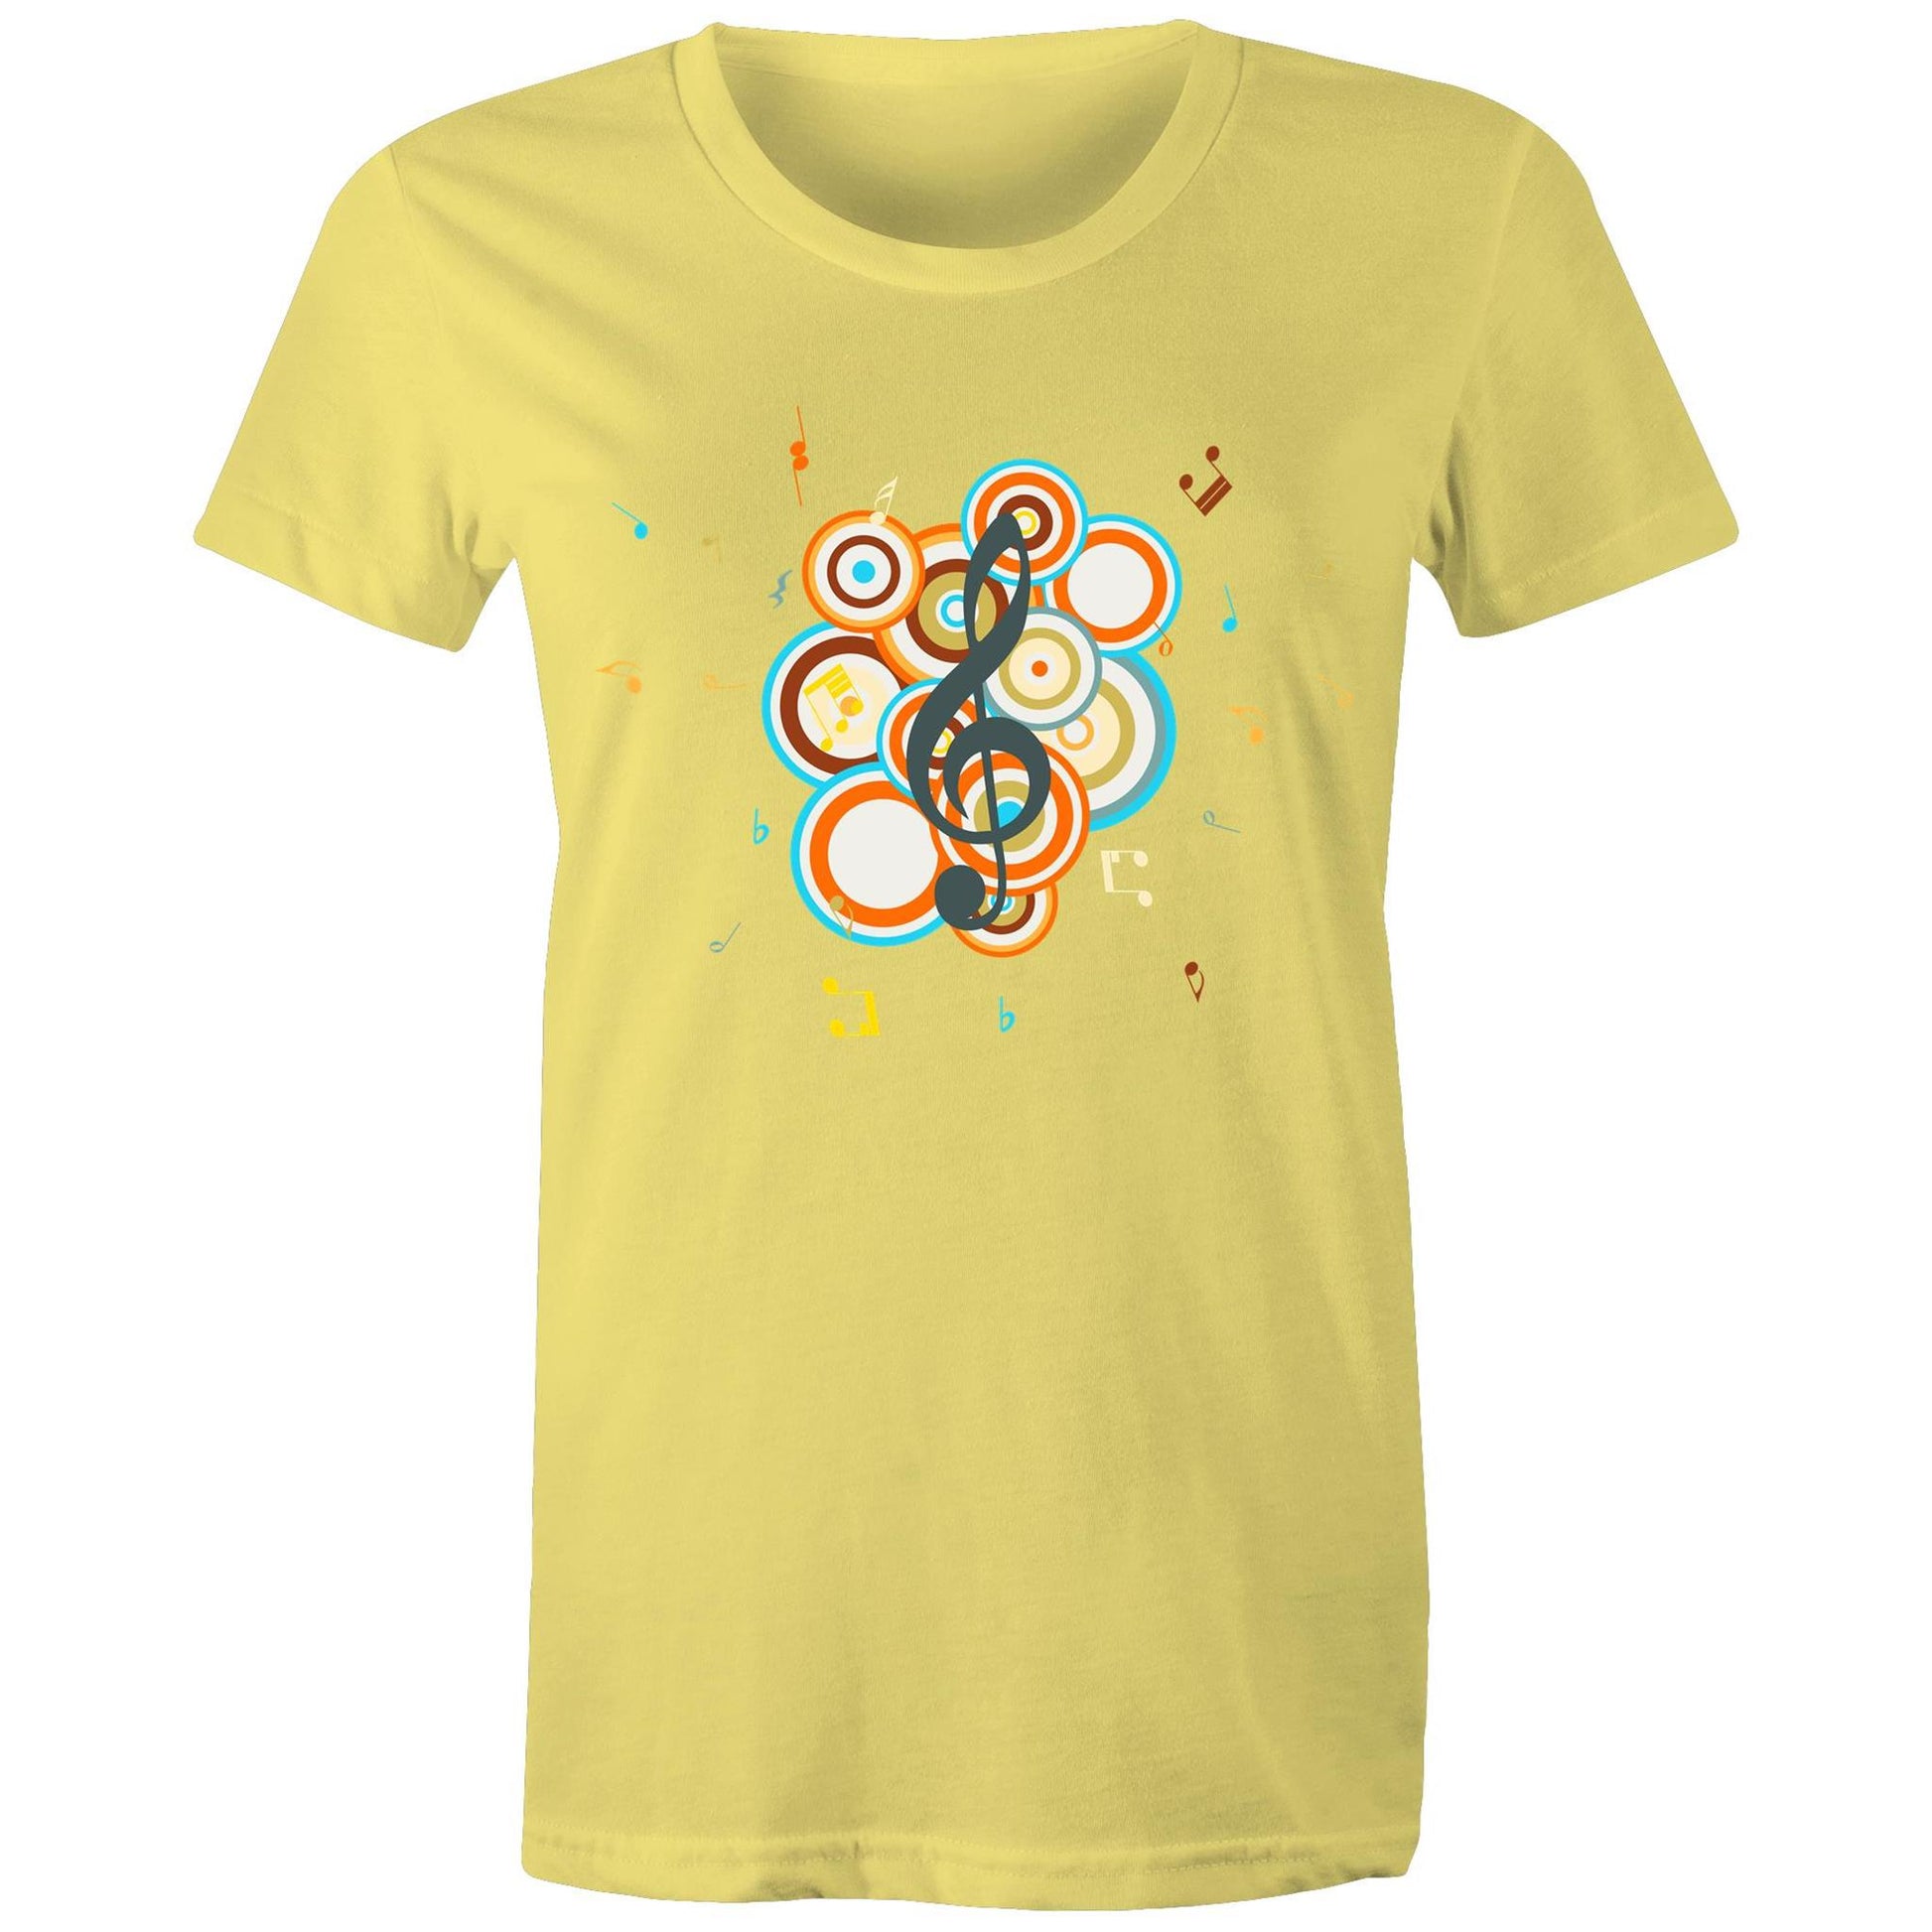 Groovy Music - Women's T-shirt Yellow Womens T-shirt Music Retro Womens